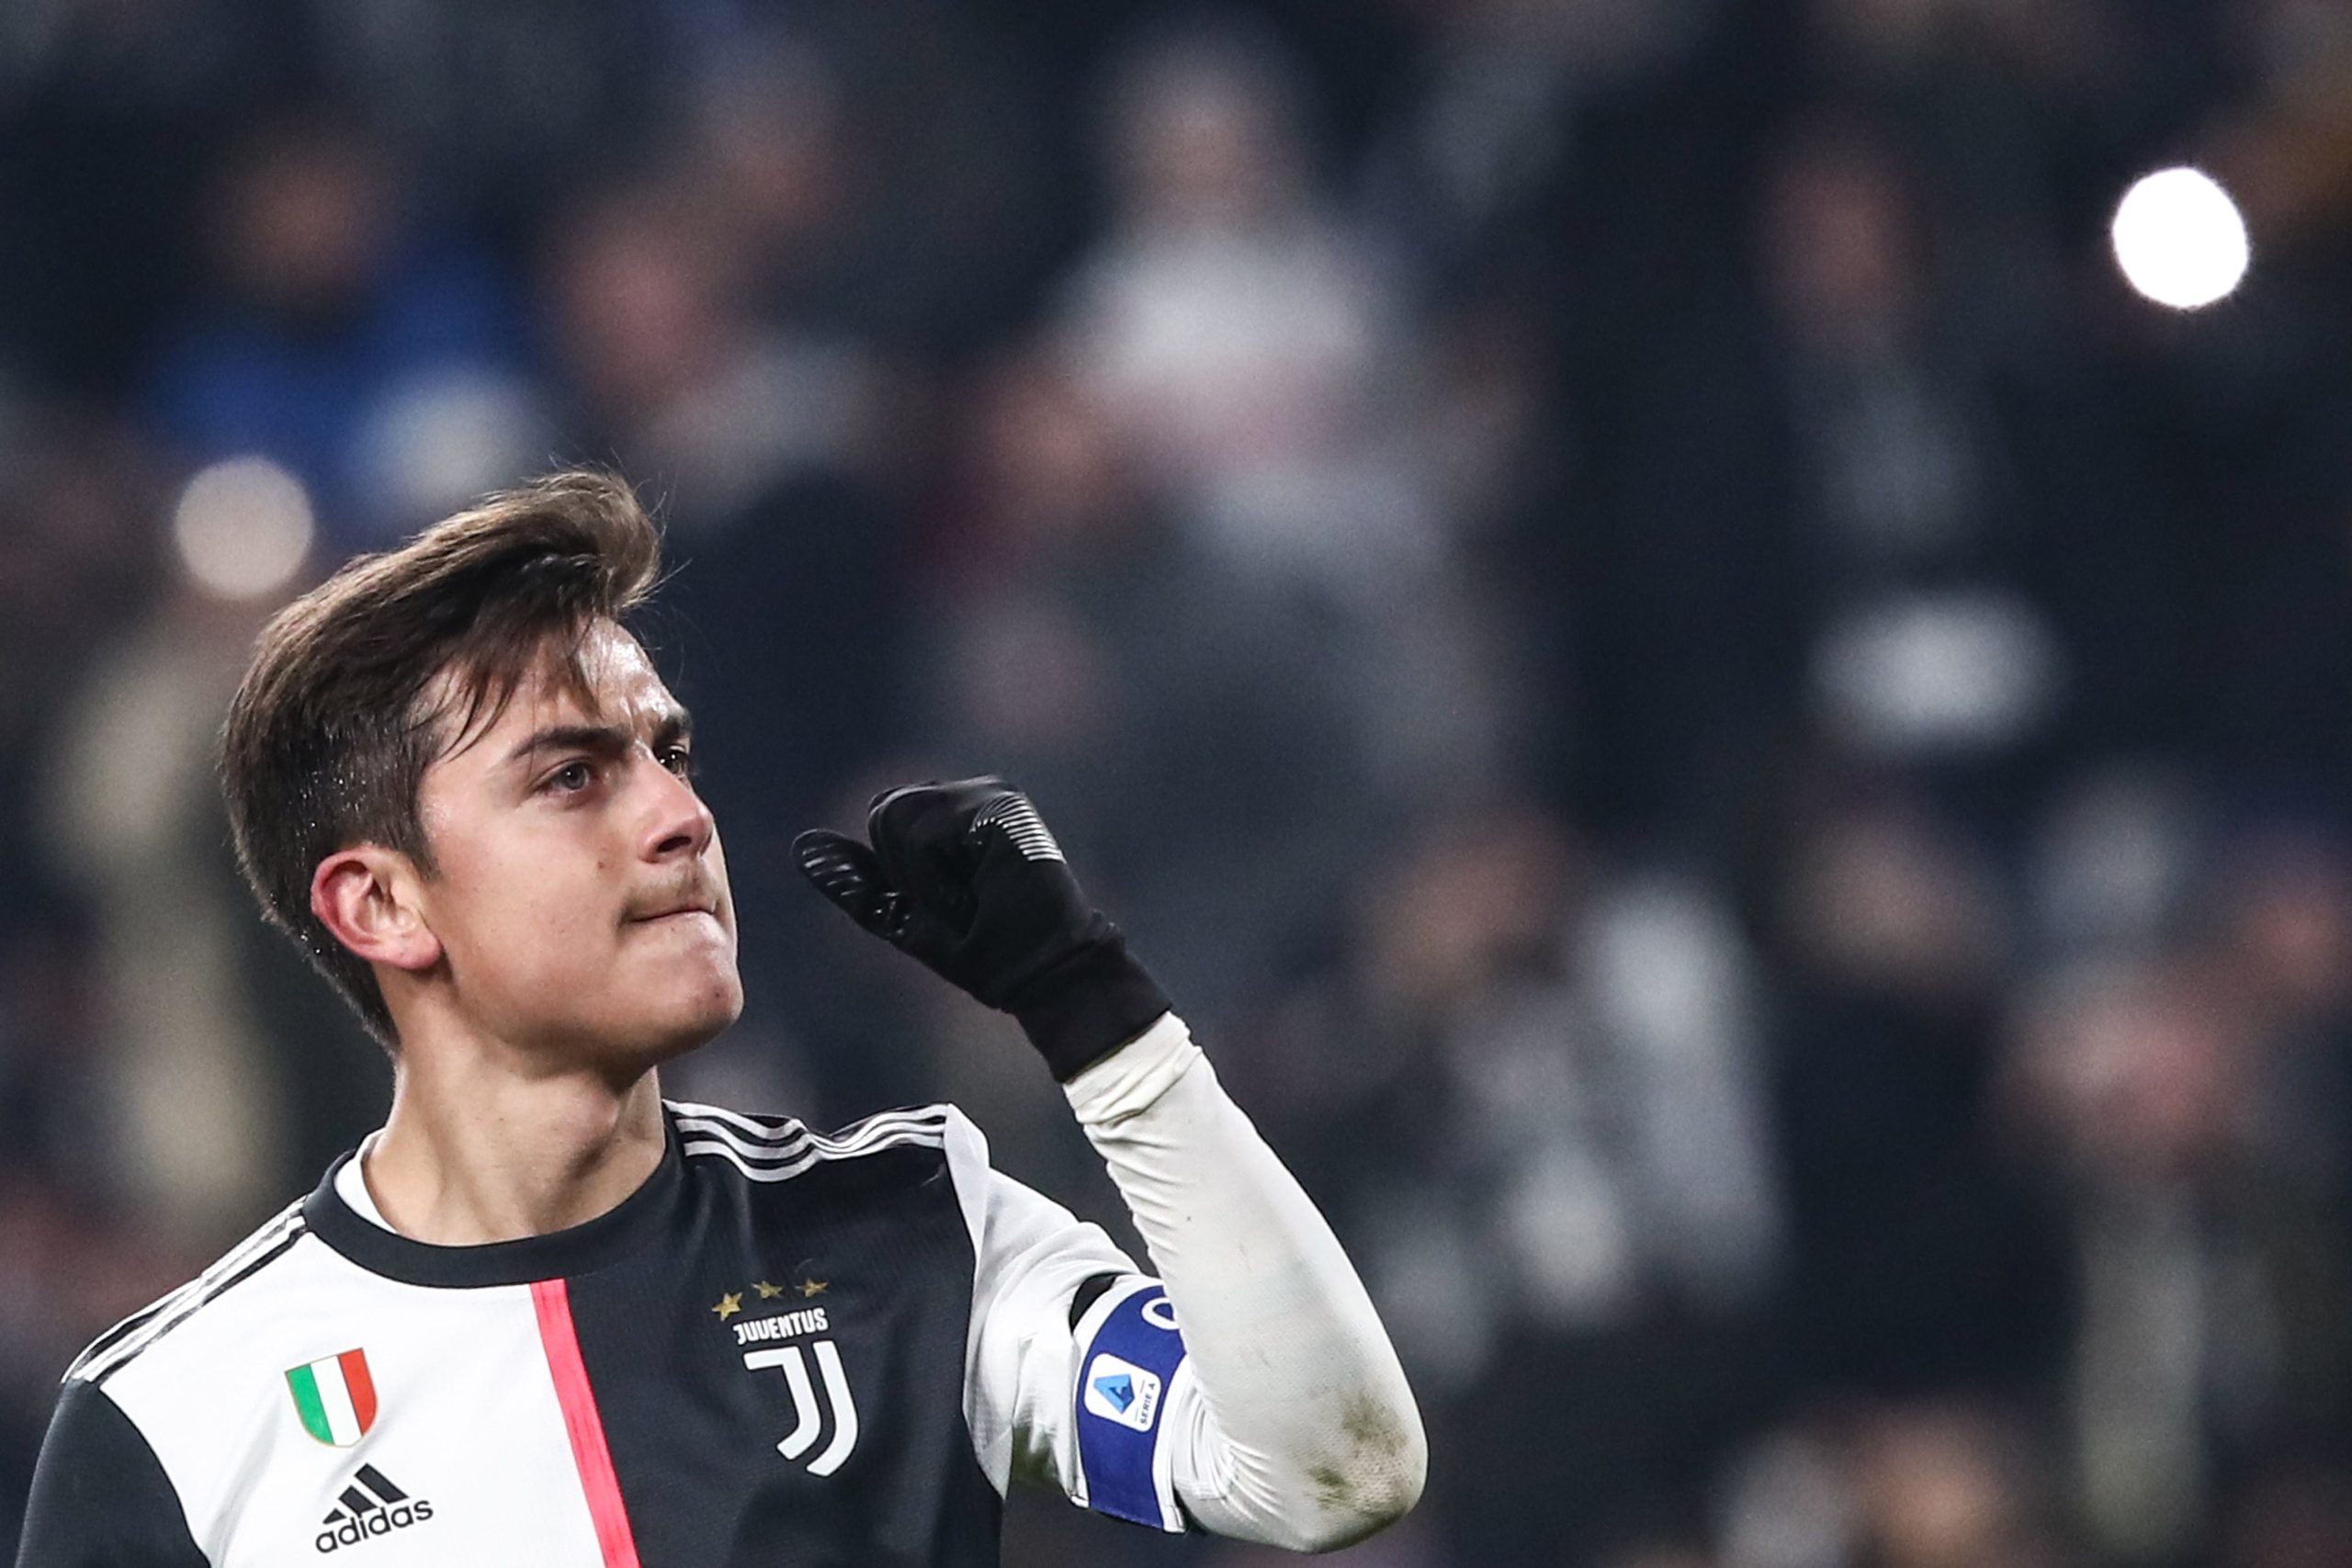 Résultat de recherche d'images pour "Juventus 4:0 Udinese"